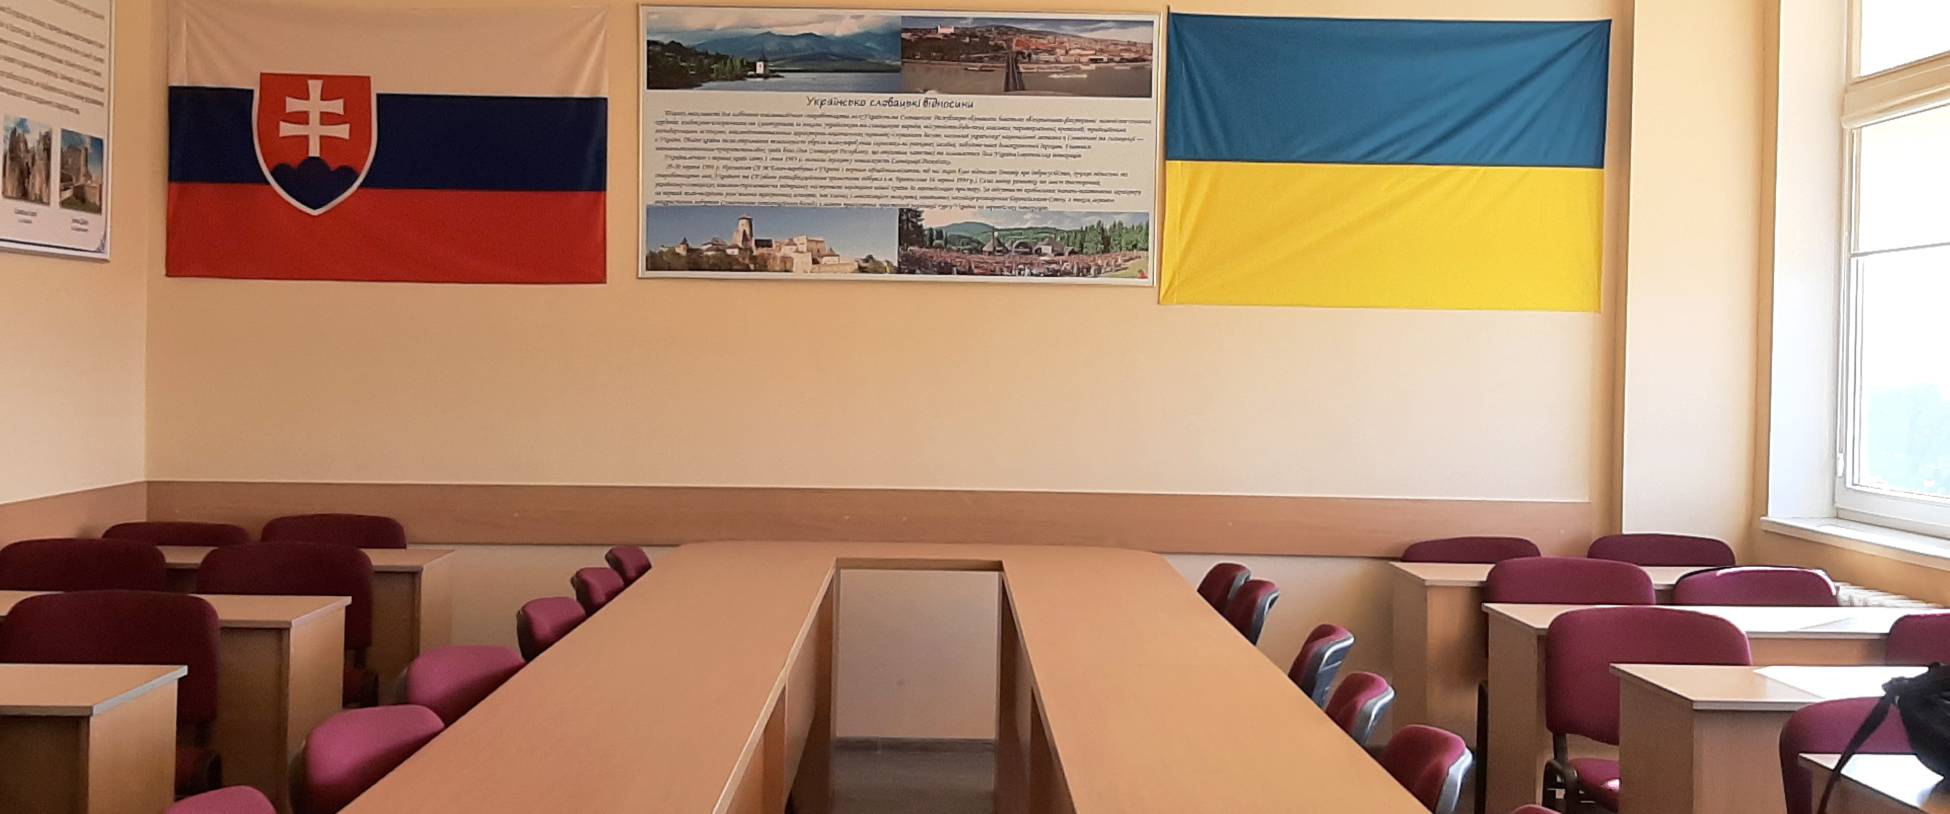 На ФМЕВ відкрили кабінет українсько-словацької дружби